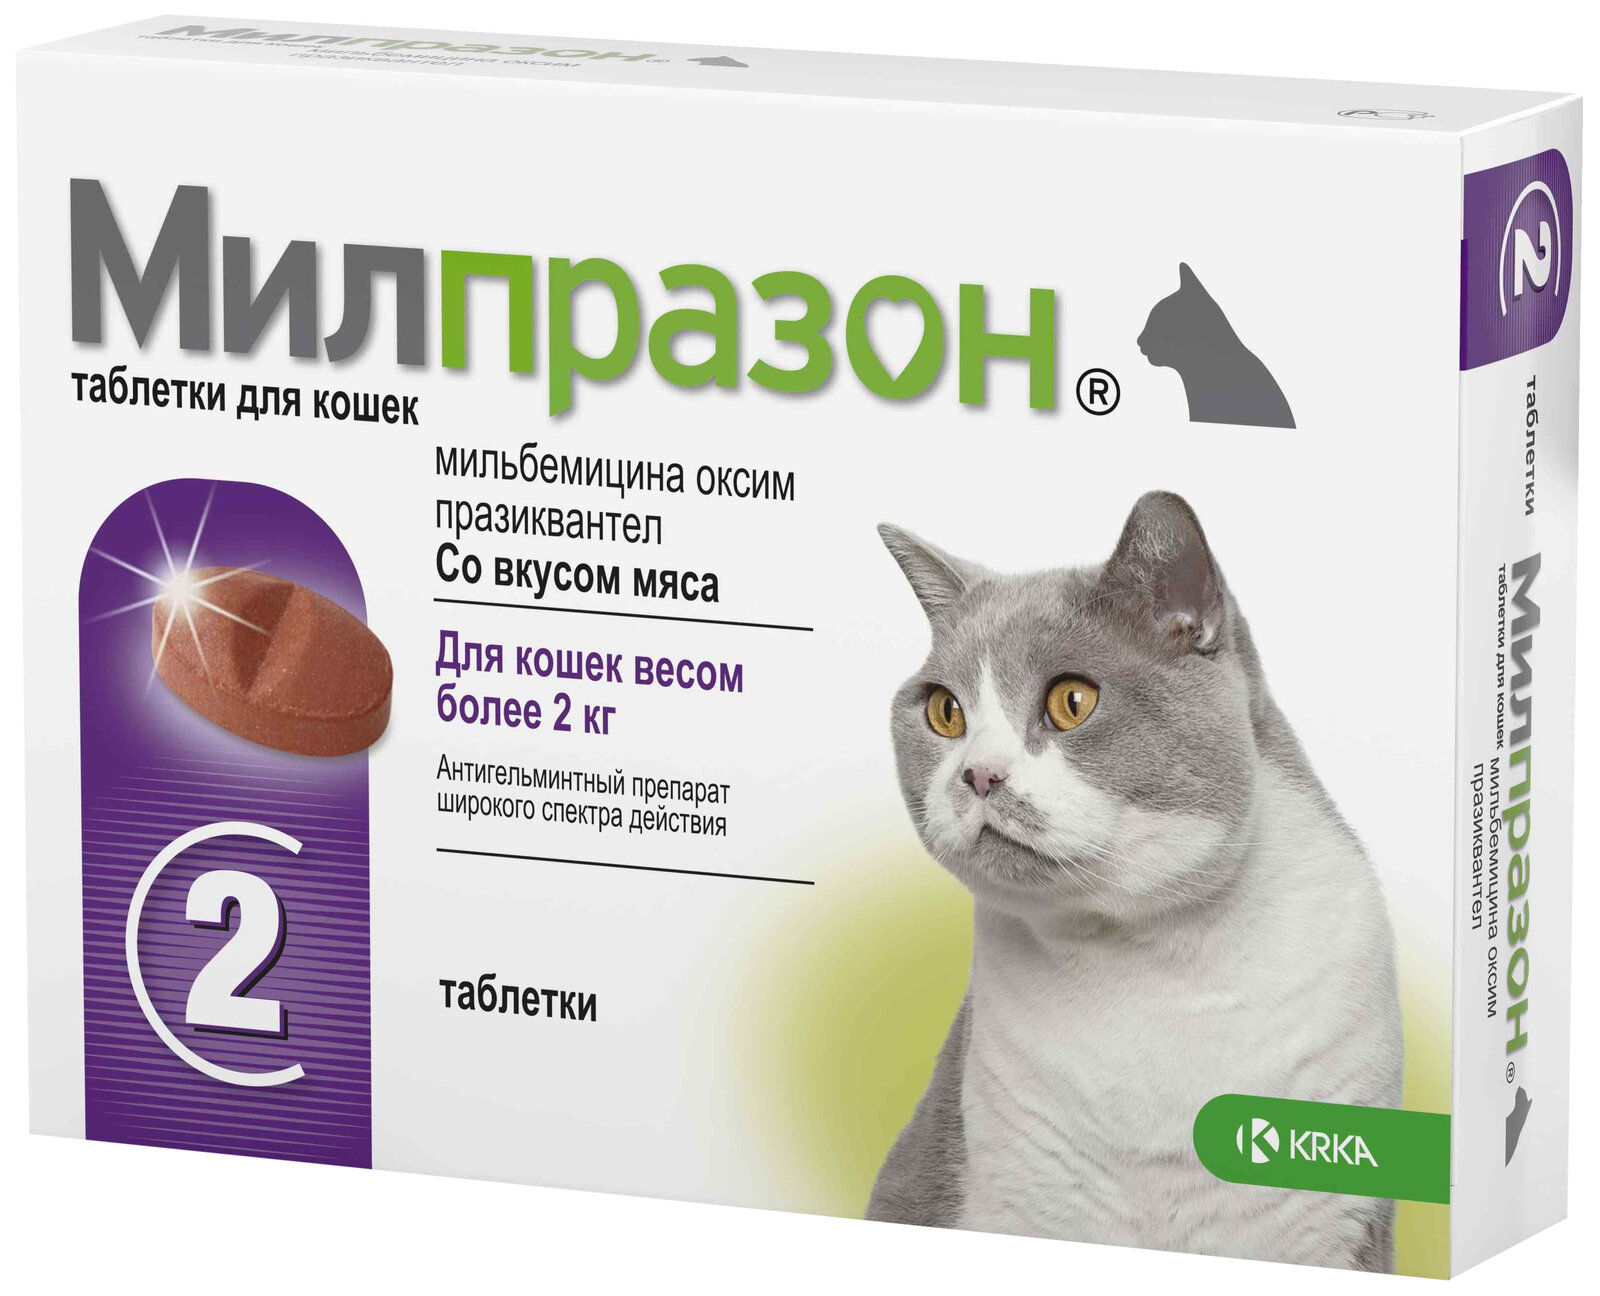 Милпразон для кошек более 2 кг, 1 таблетка